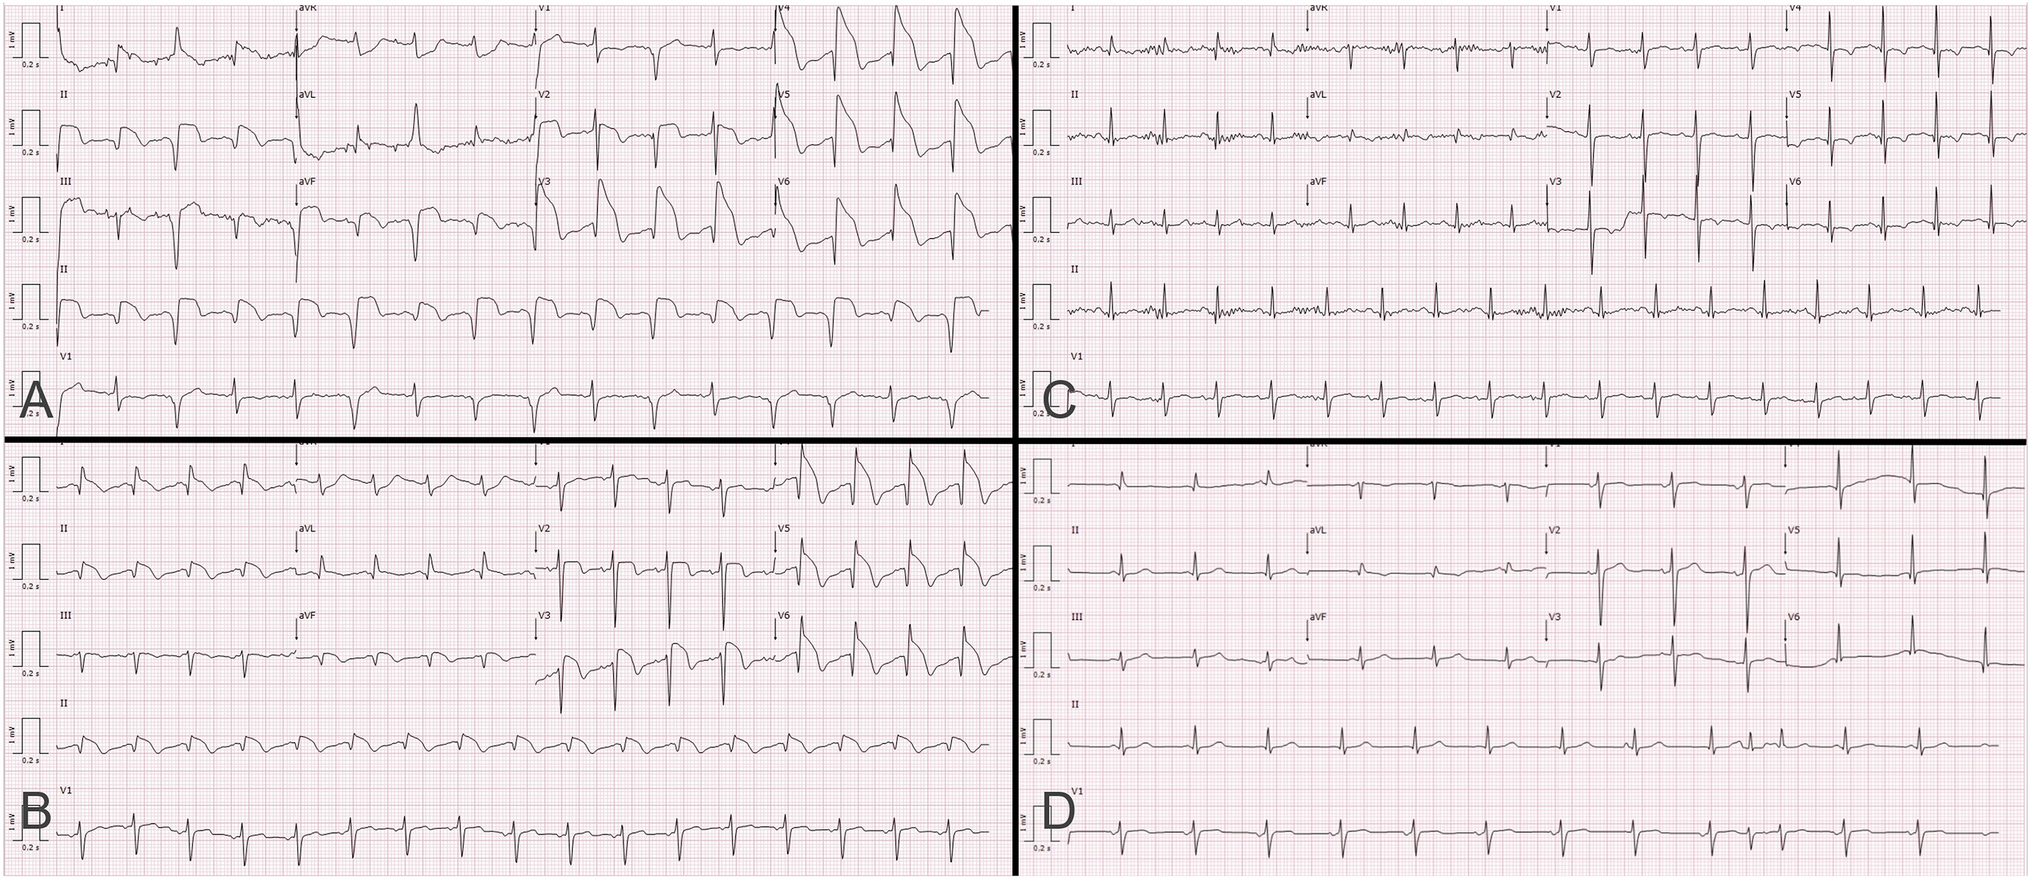 “Shark Fin” electrocardiogram pattern in Takotsubo cardiomyopathy